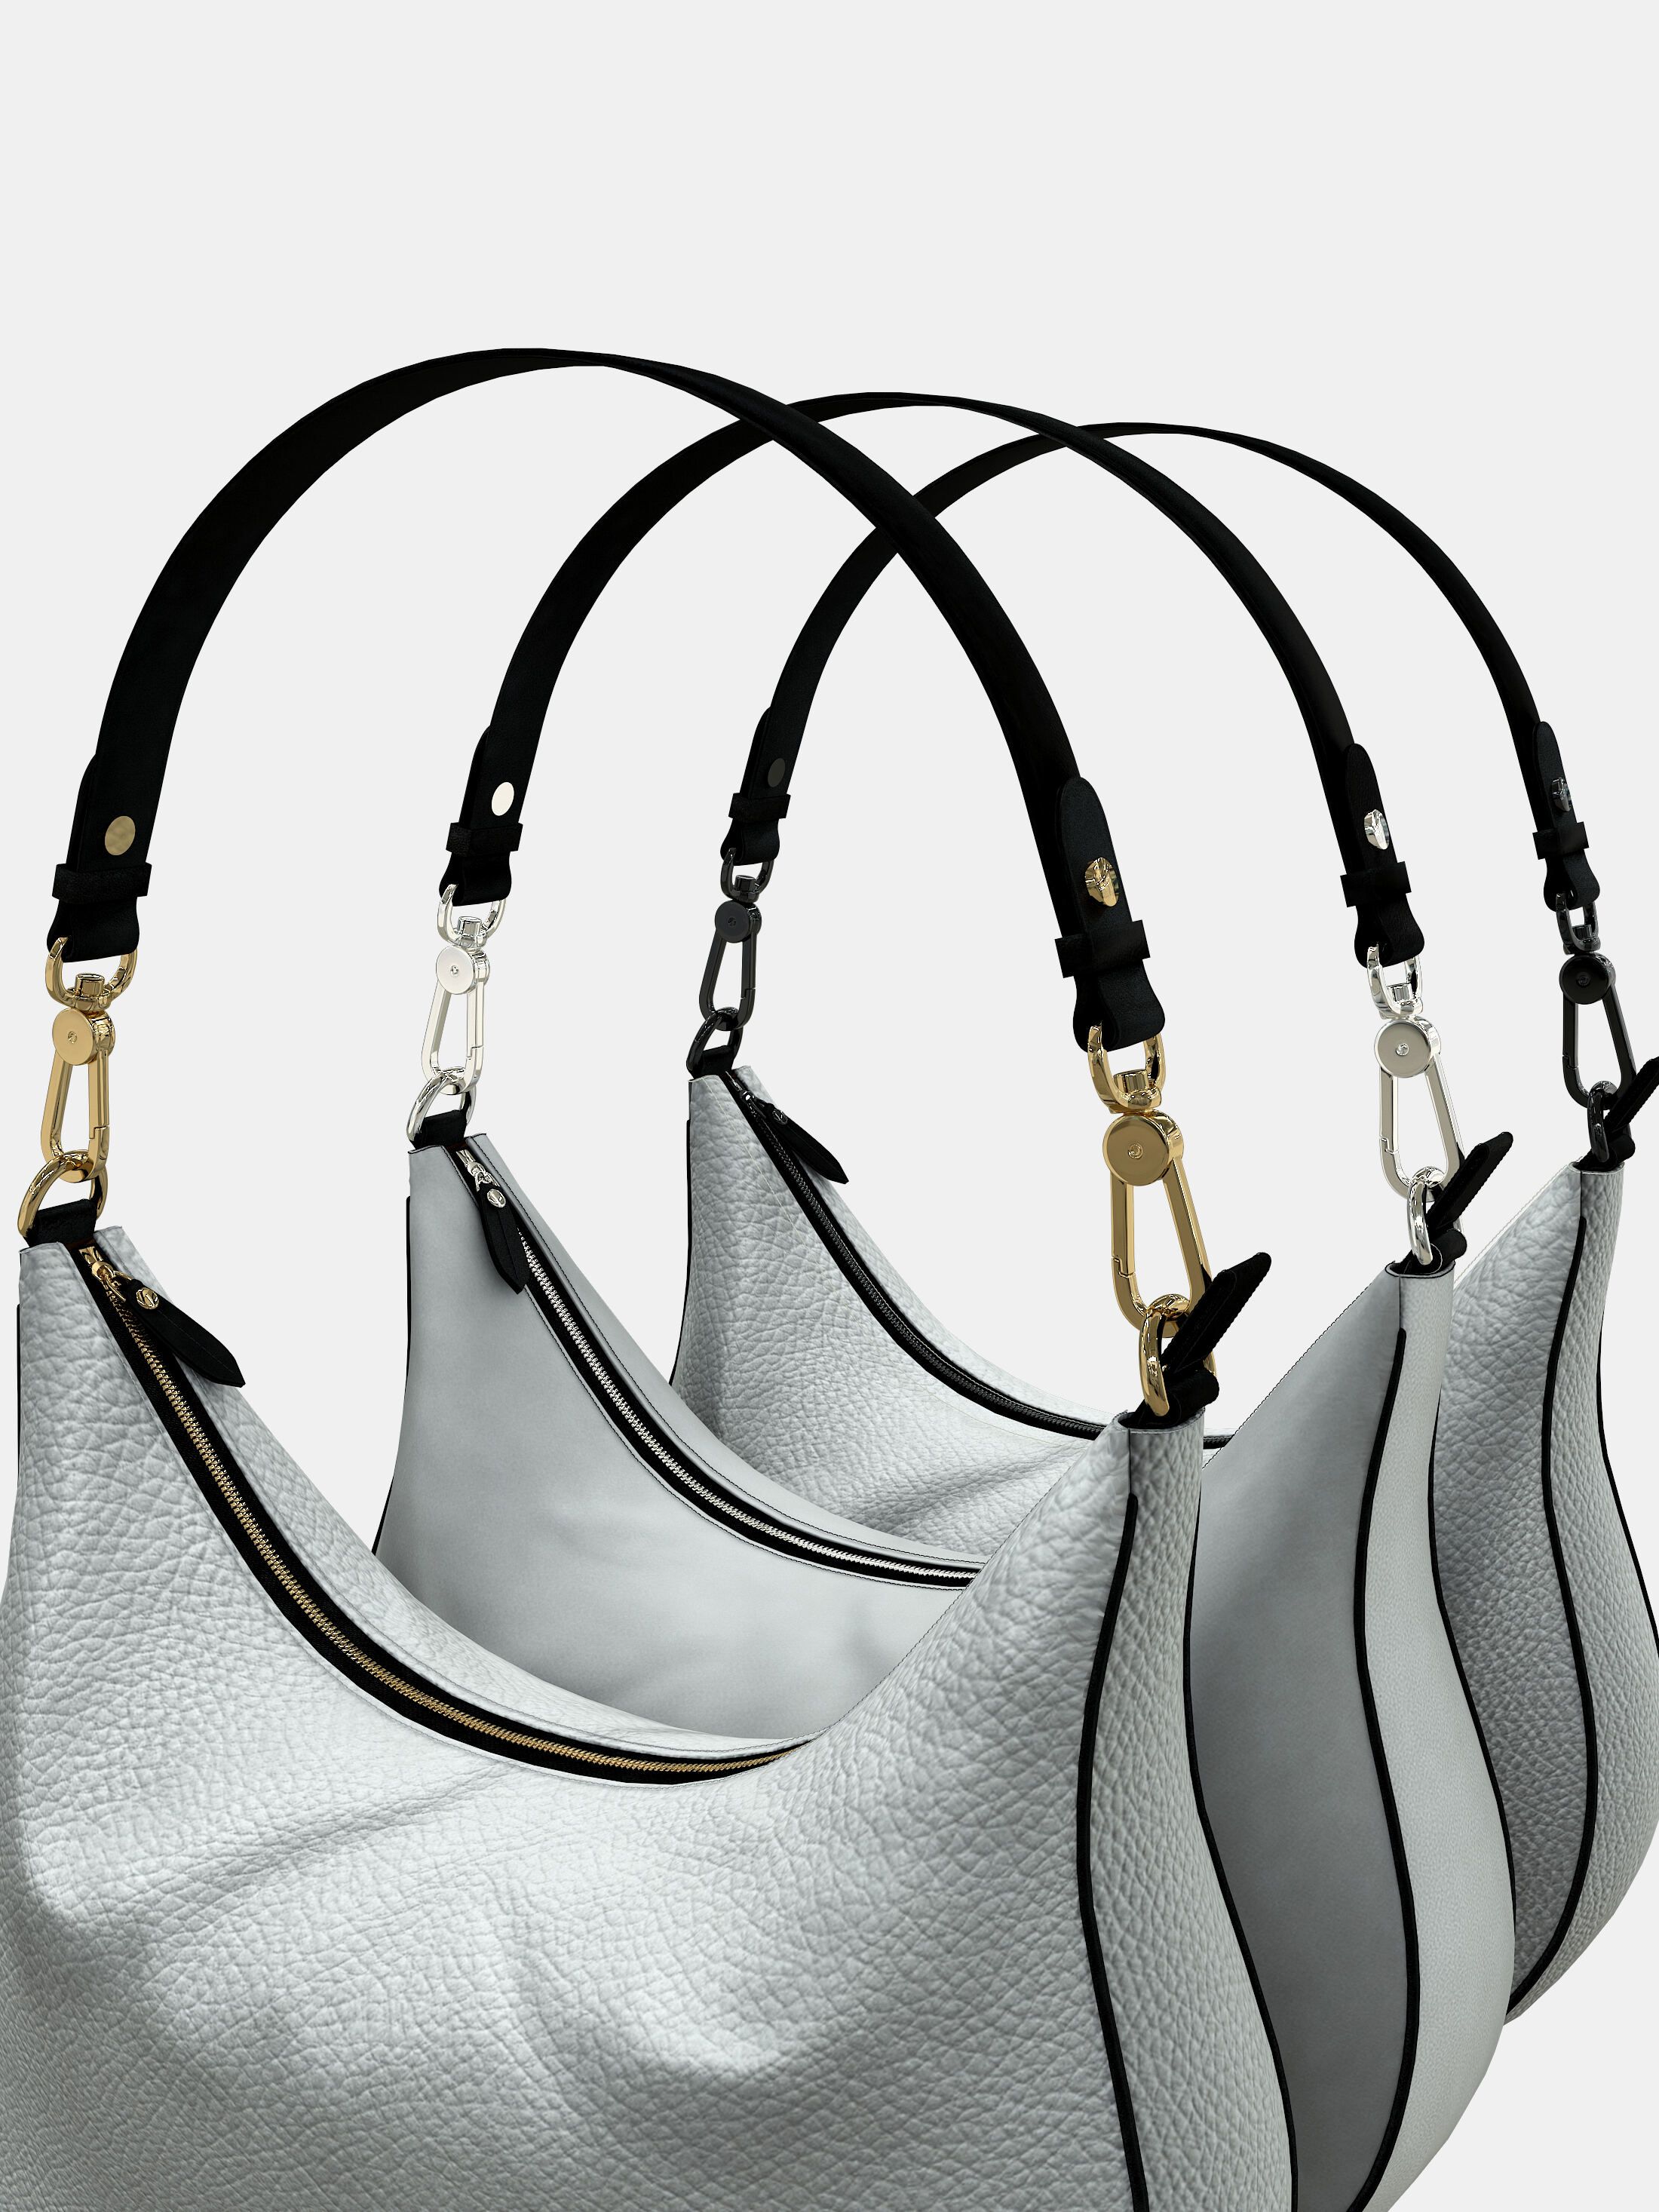 design your own shoulder bag strap options